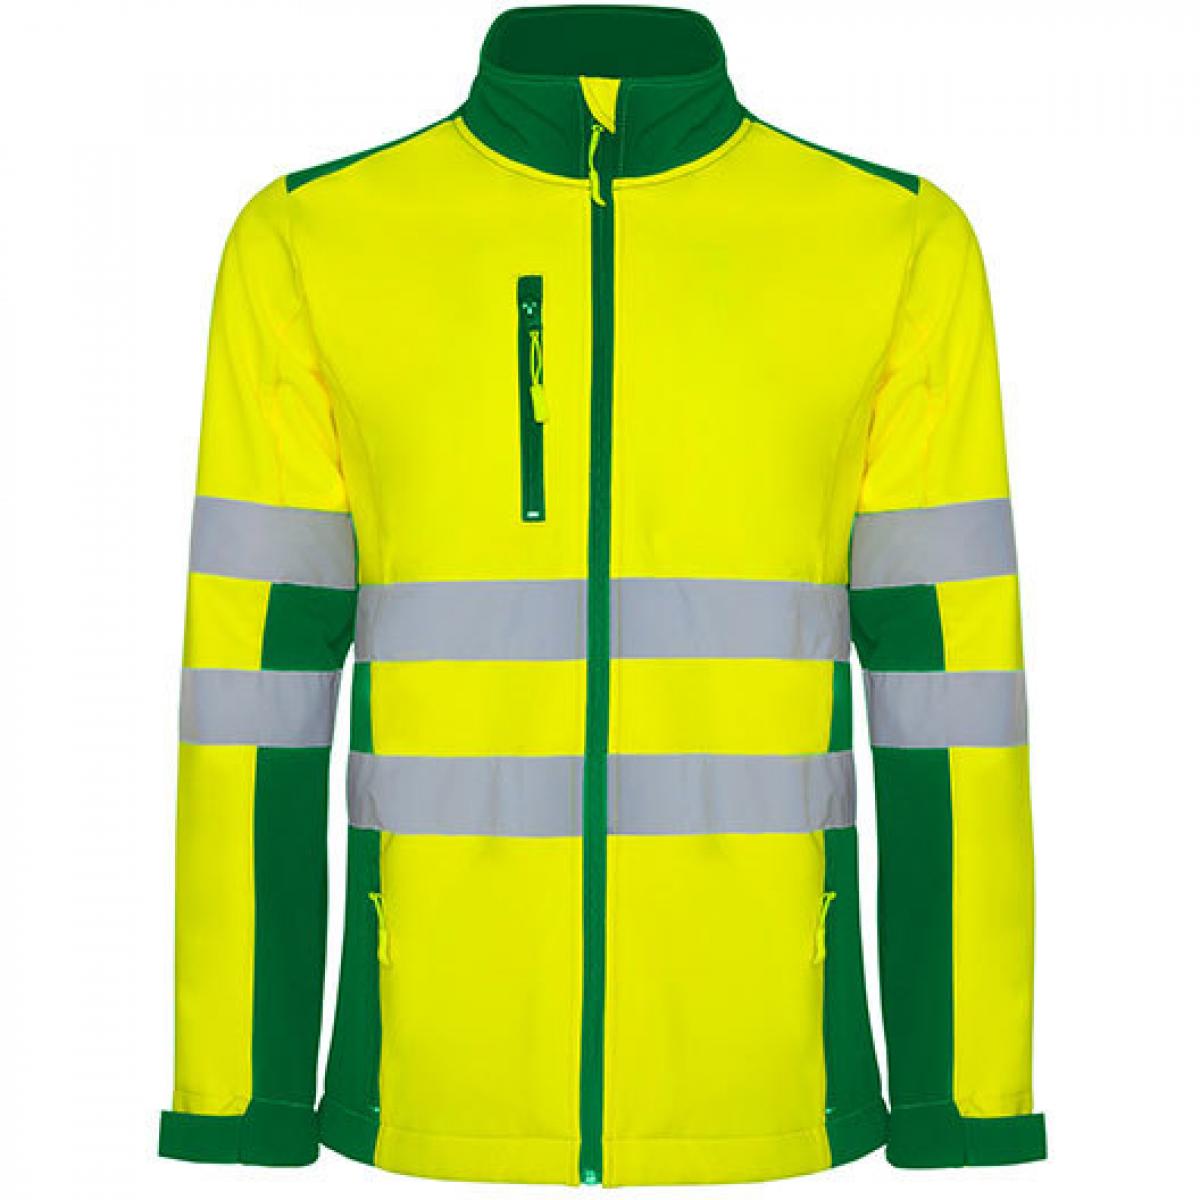 Hersteller: Roly Workwear Herstellernummer: HV9303 Artikelbezeichnung: Antares Hi-Viz Softshell Jacke mit Reflektionsstreifen Farbe: Garden Green 52/Fluor Yellow 221